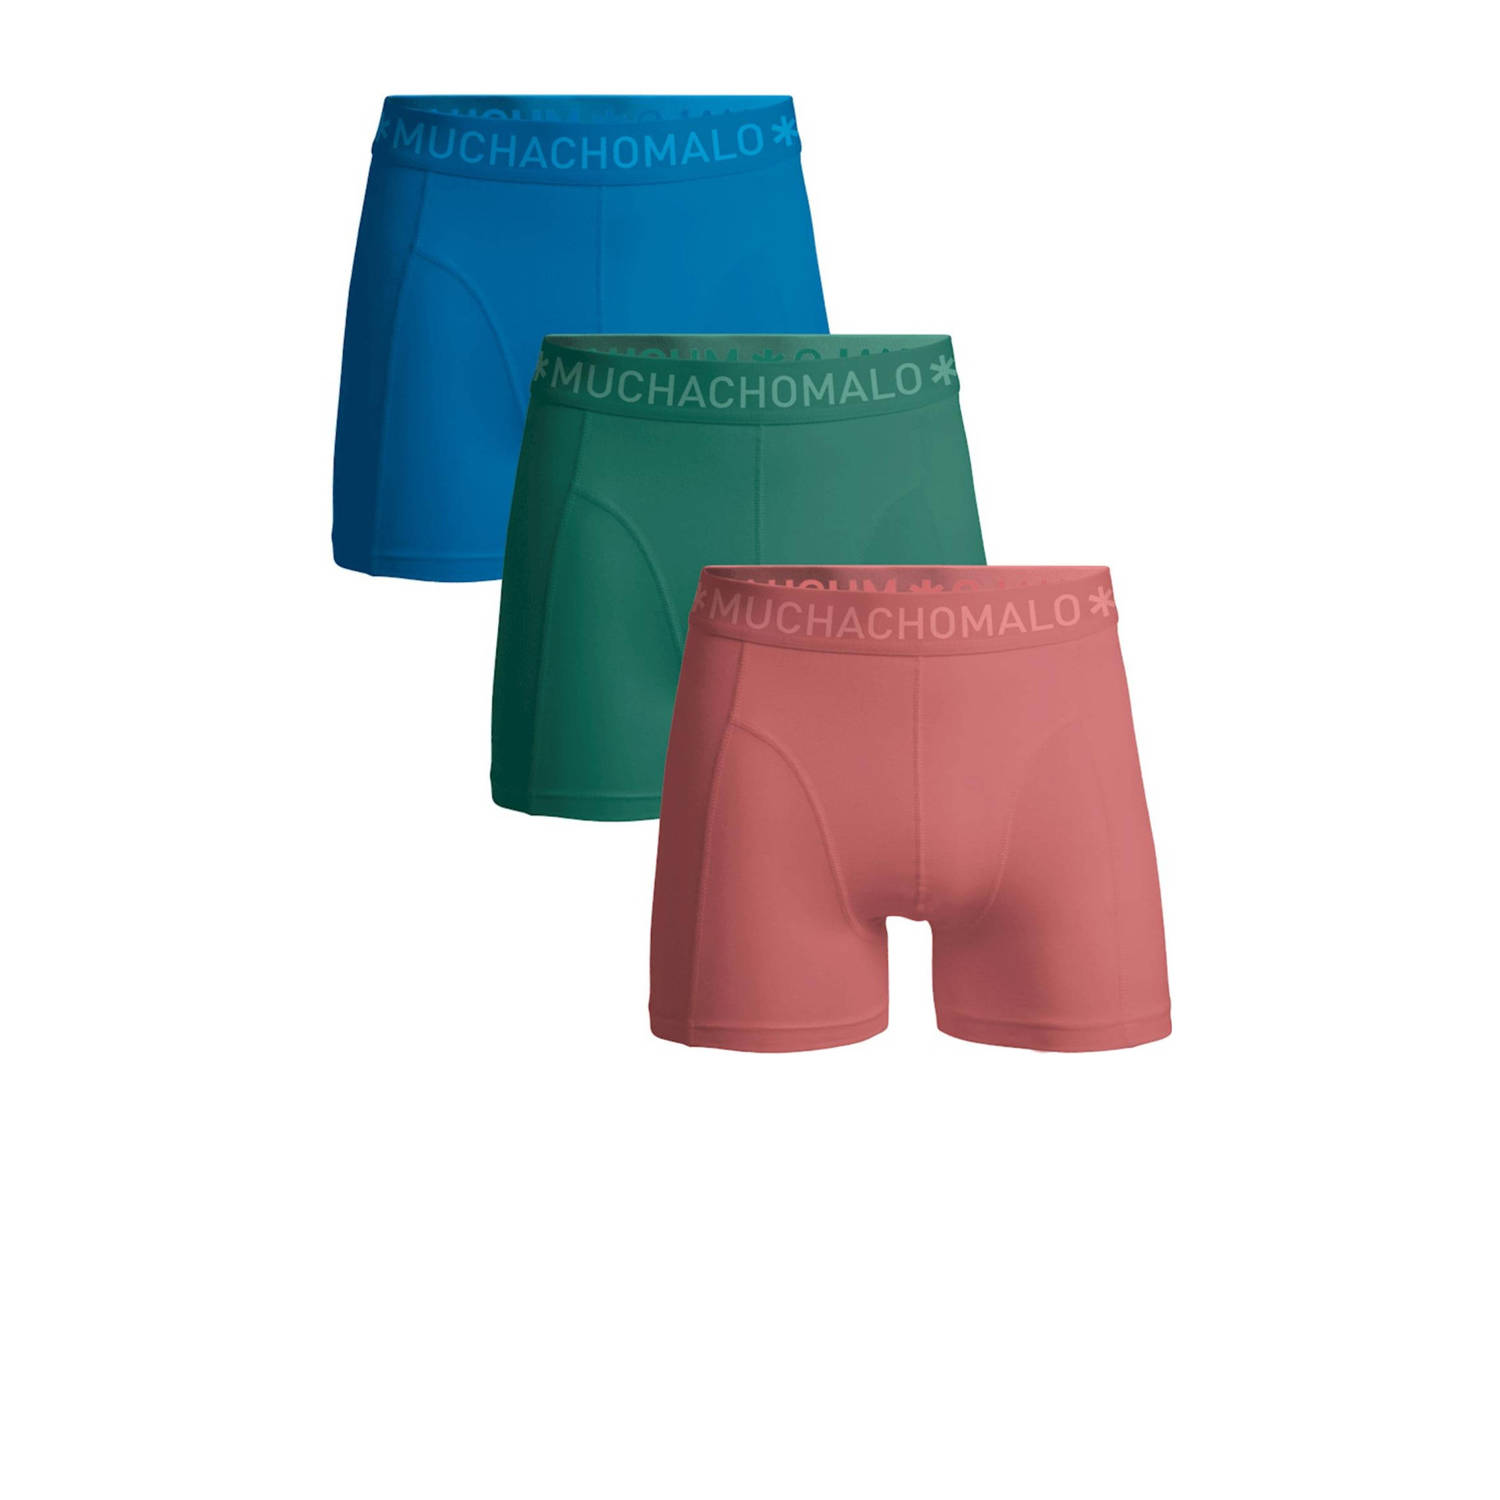 Muchachomalo boxershort SOLID- set van 3 blauw groen roze Multi Jongens Stretchkatoen 134 140